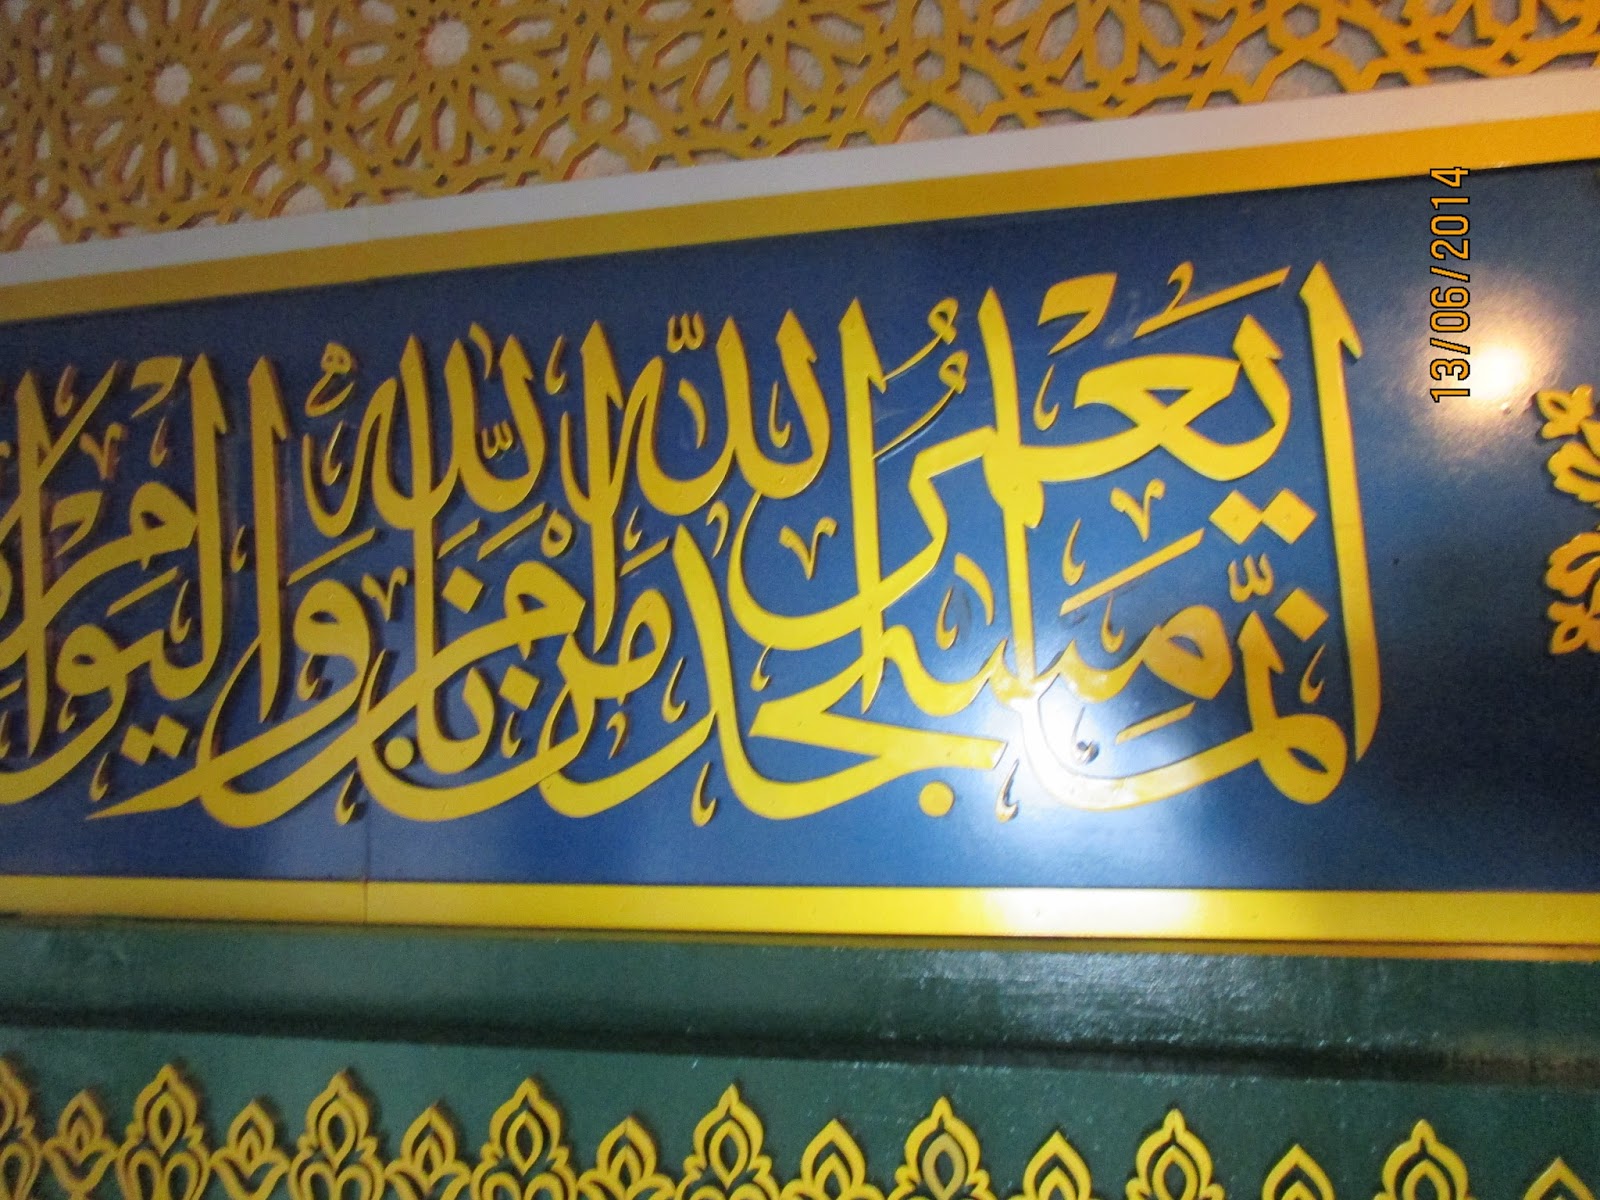 44 Contoh Gambar Kaligrafi Dinding Masjid Terbaik dan Terindah